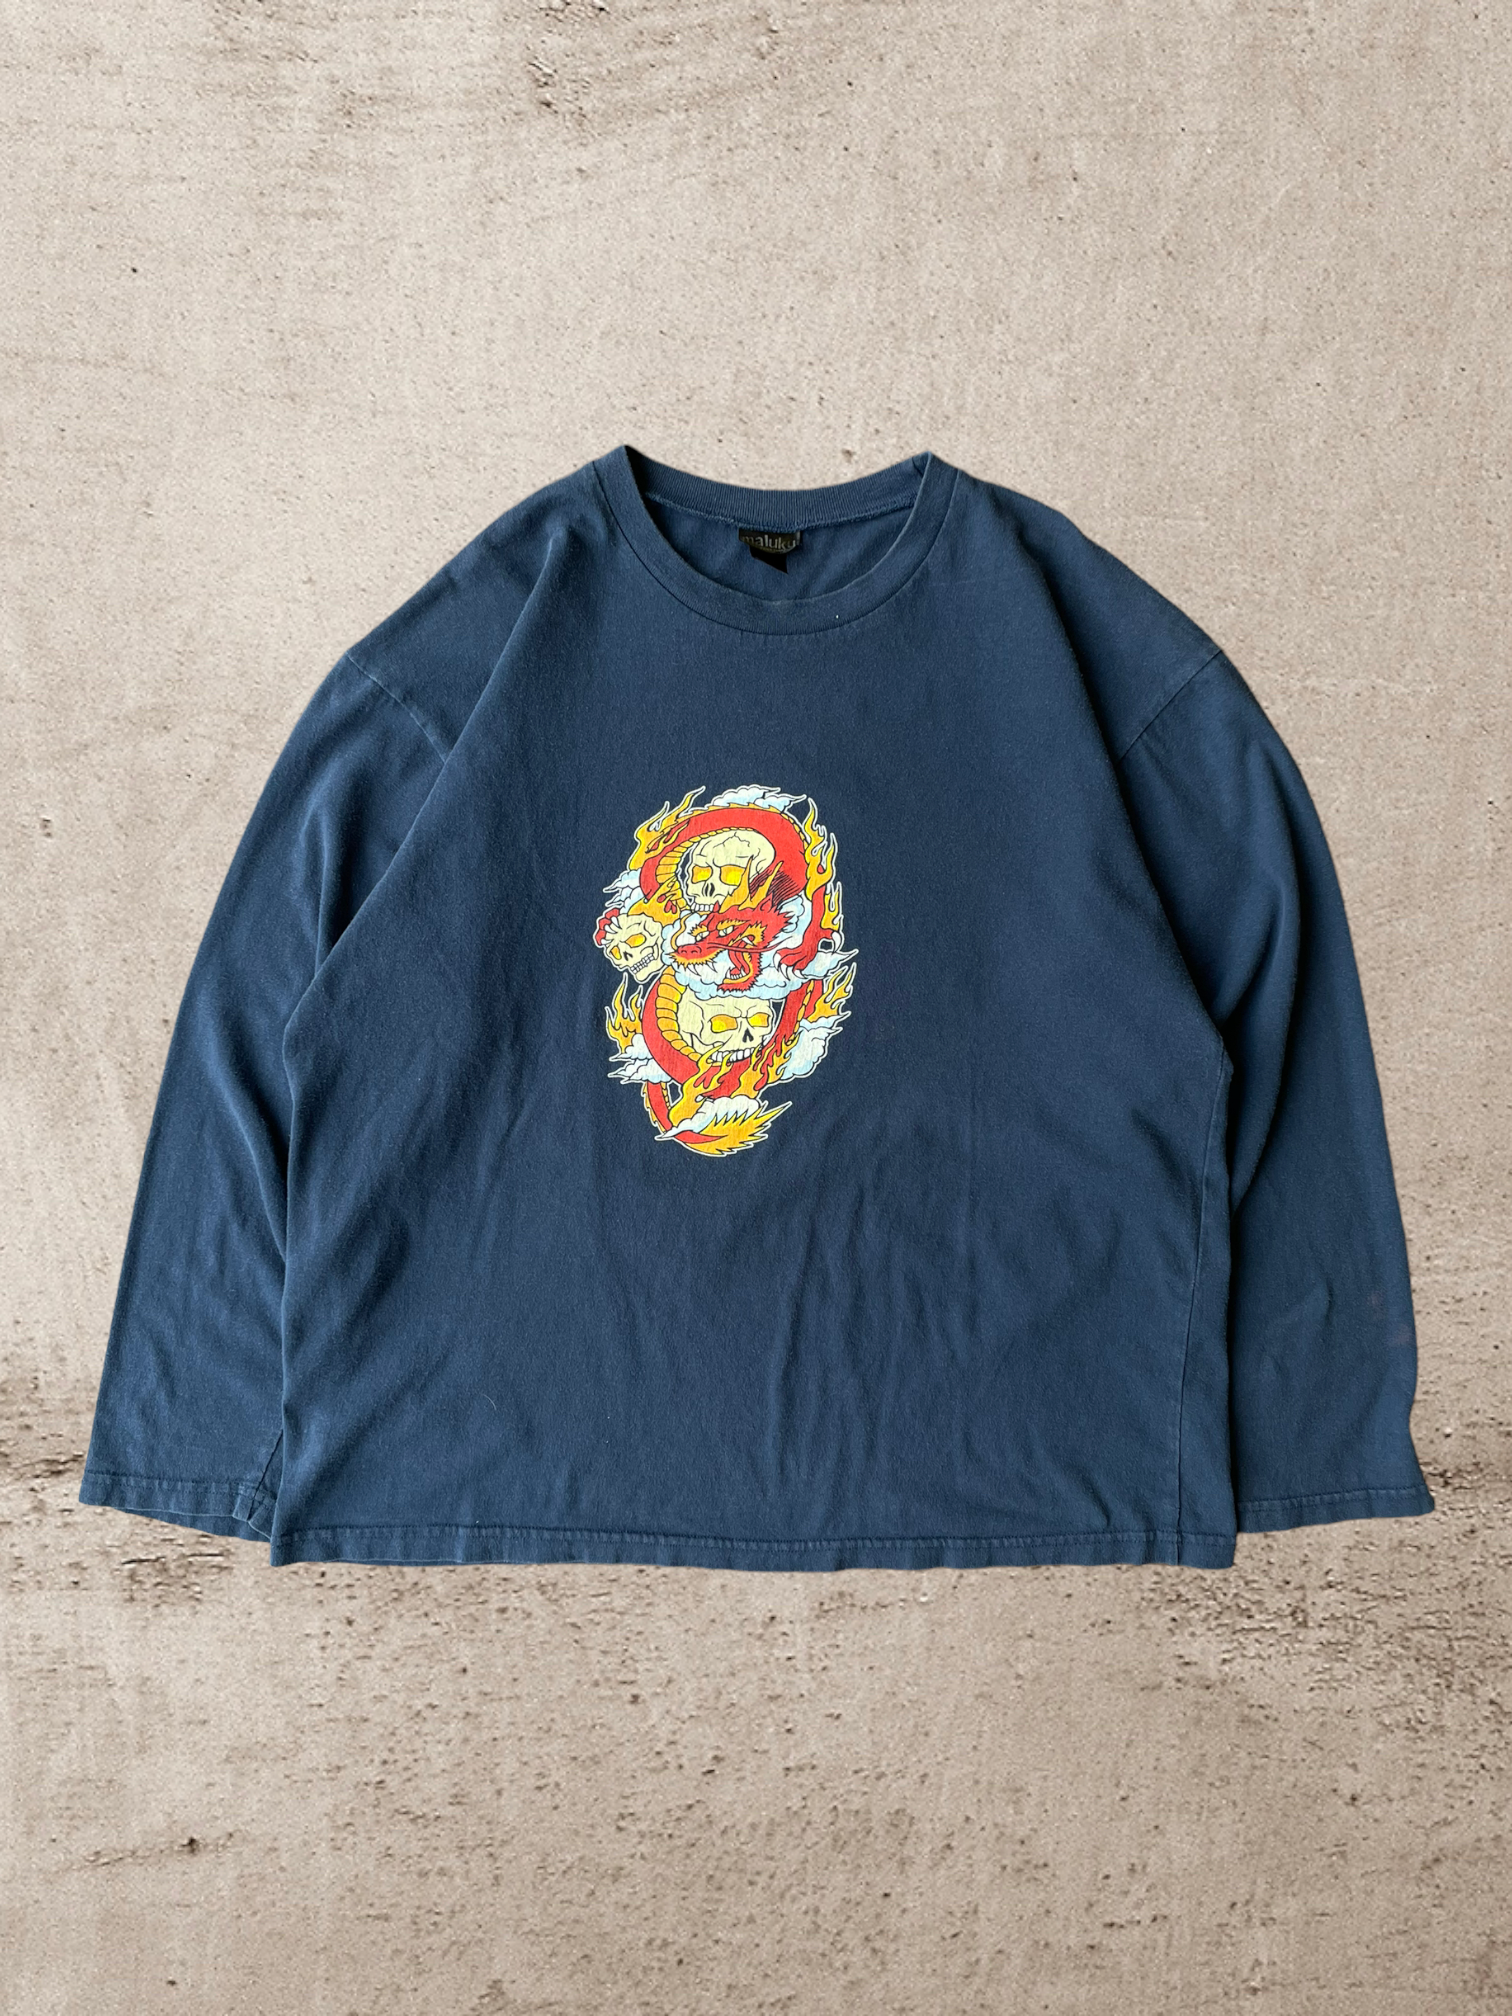 90s Skull Long Sleeve T-Shirt - Large